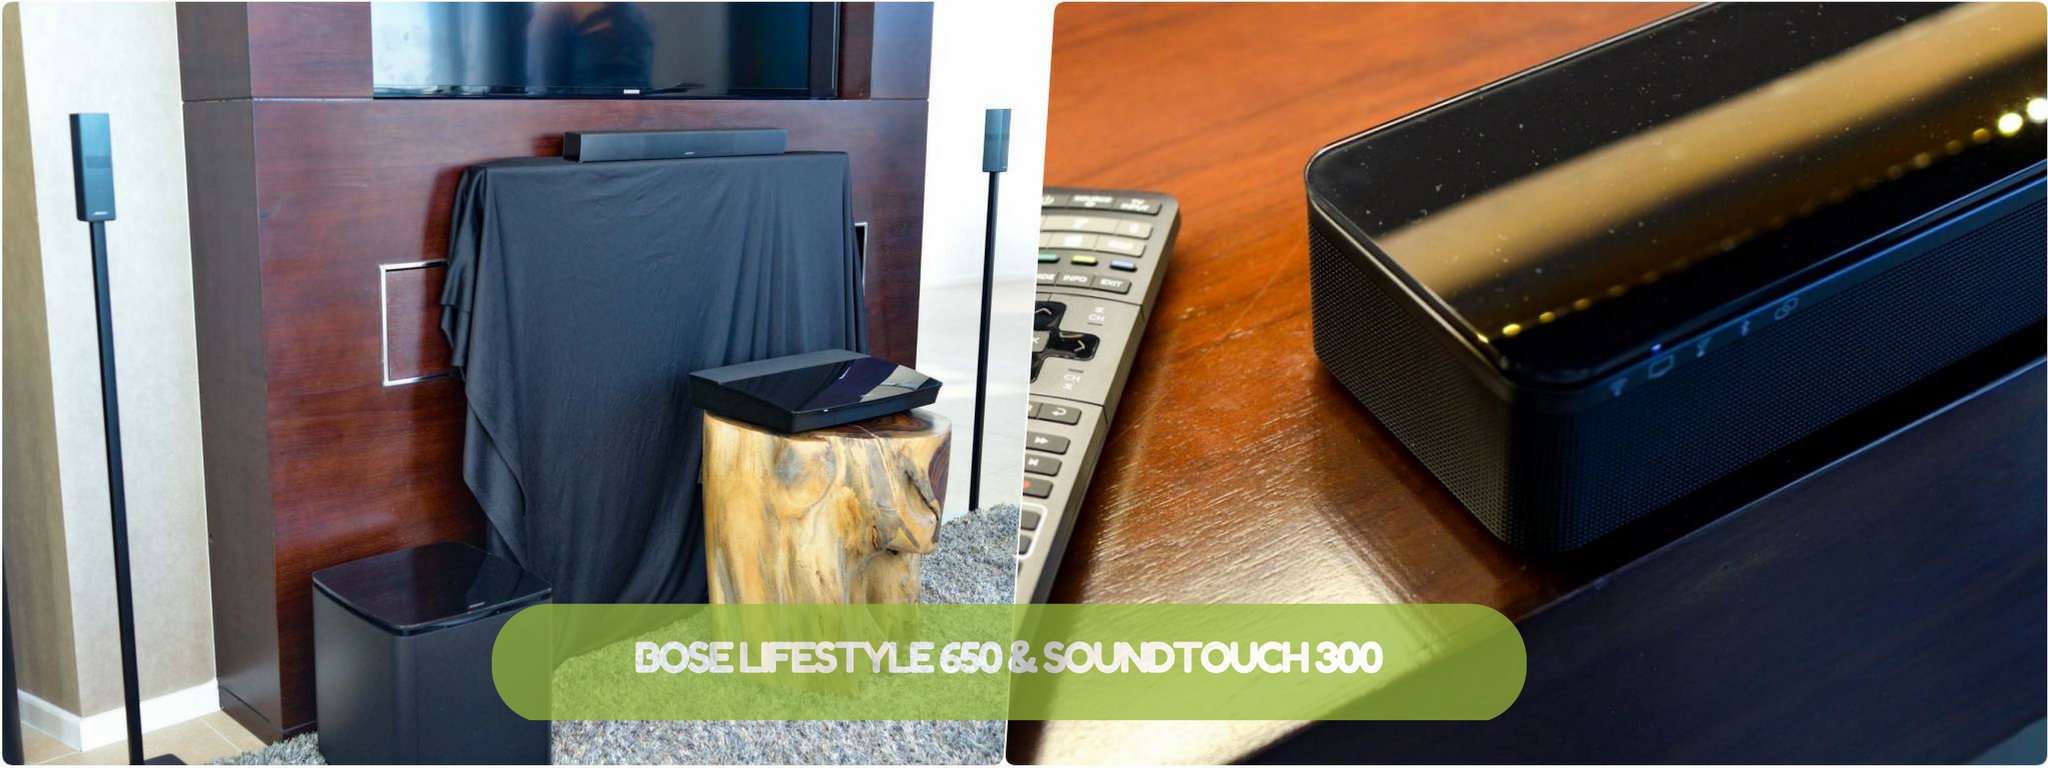 Bose ra mắt LifeStyle 650: hệ thống âm thanh 5.1 thiết kế đẹp, nhỏ gọn, giá gần 110 triệu